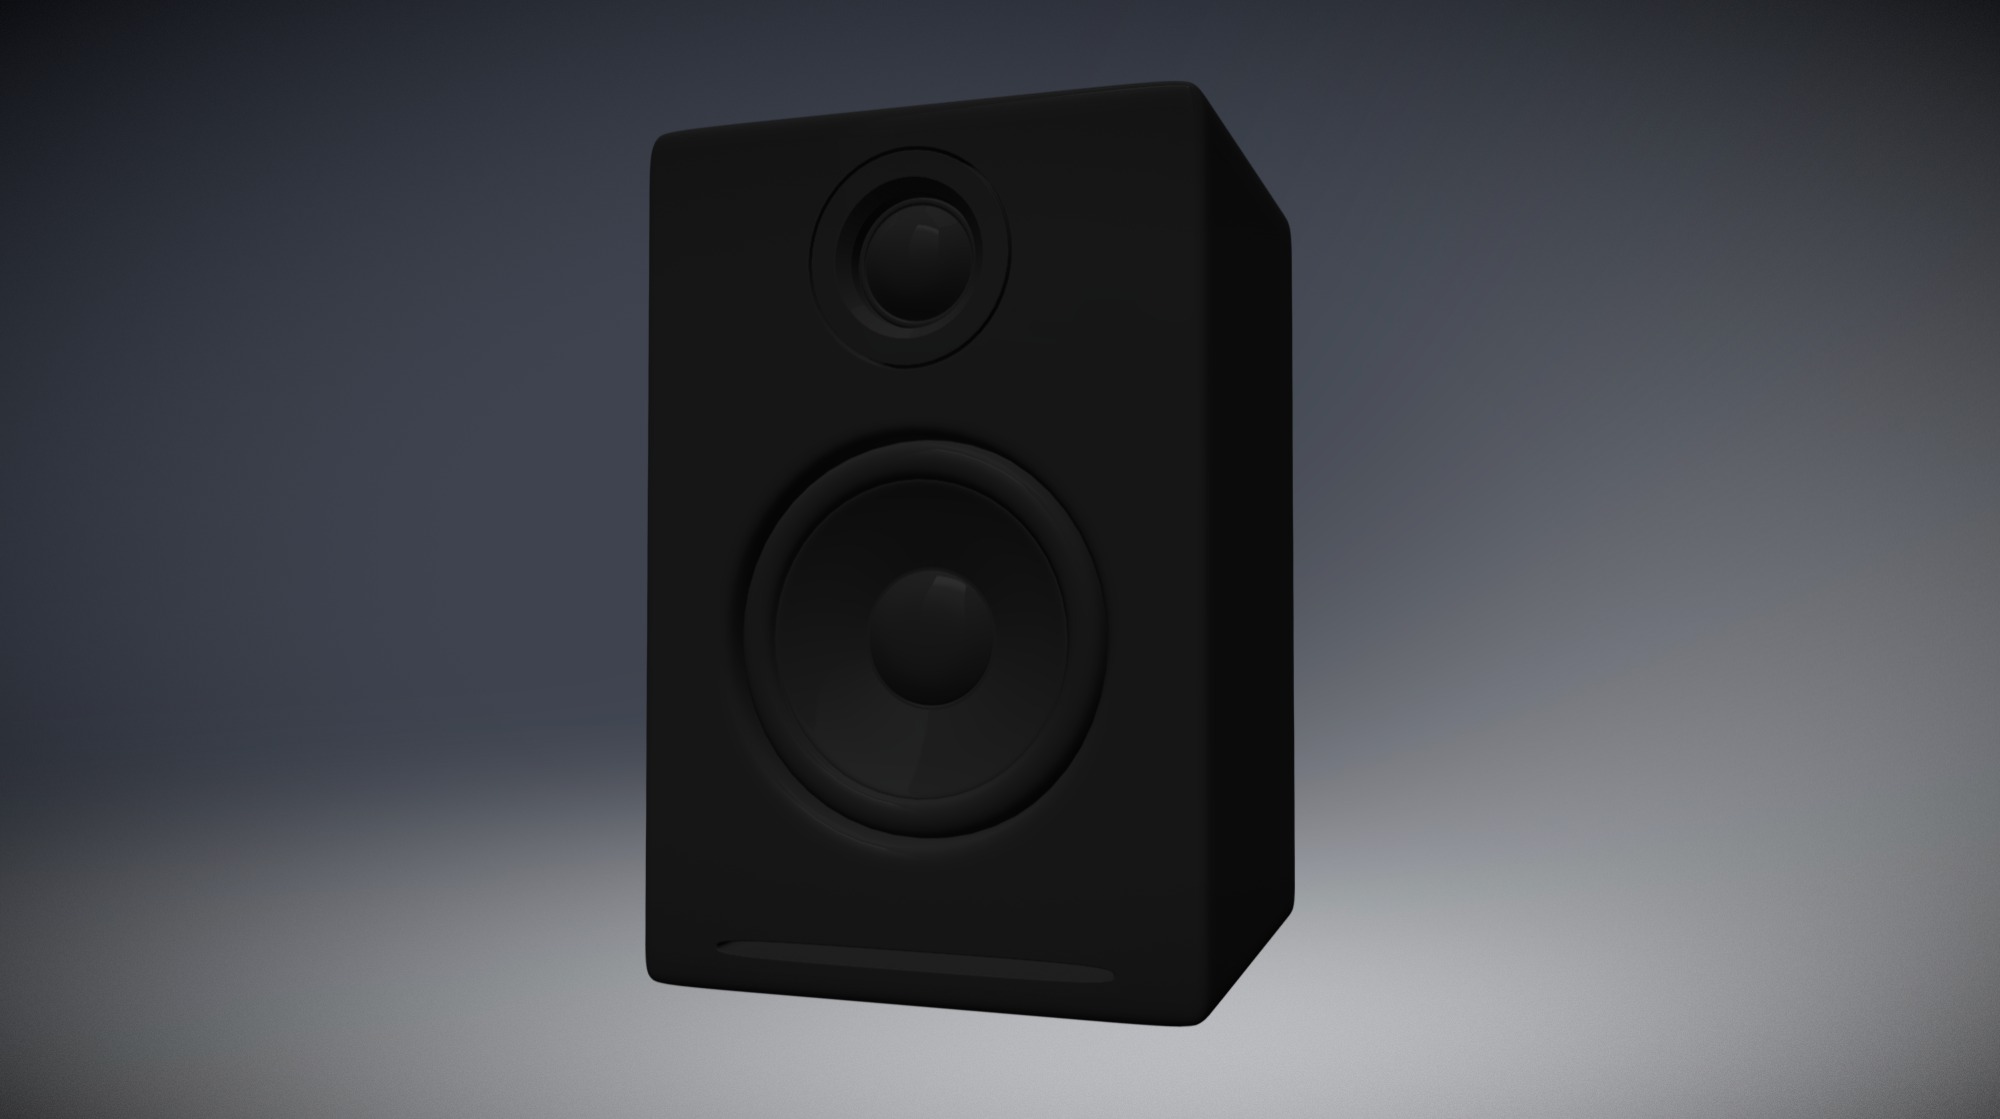 Desktop Speaker based on the design of the Audioengine A2+ speaker system 3d model